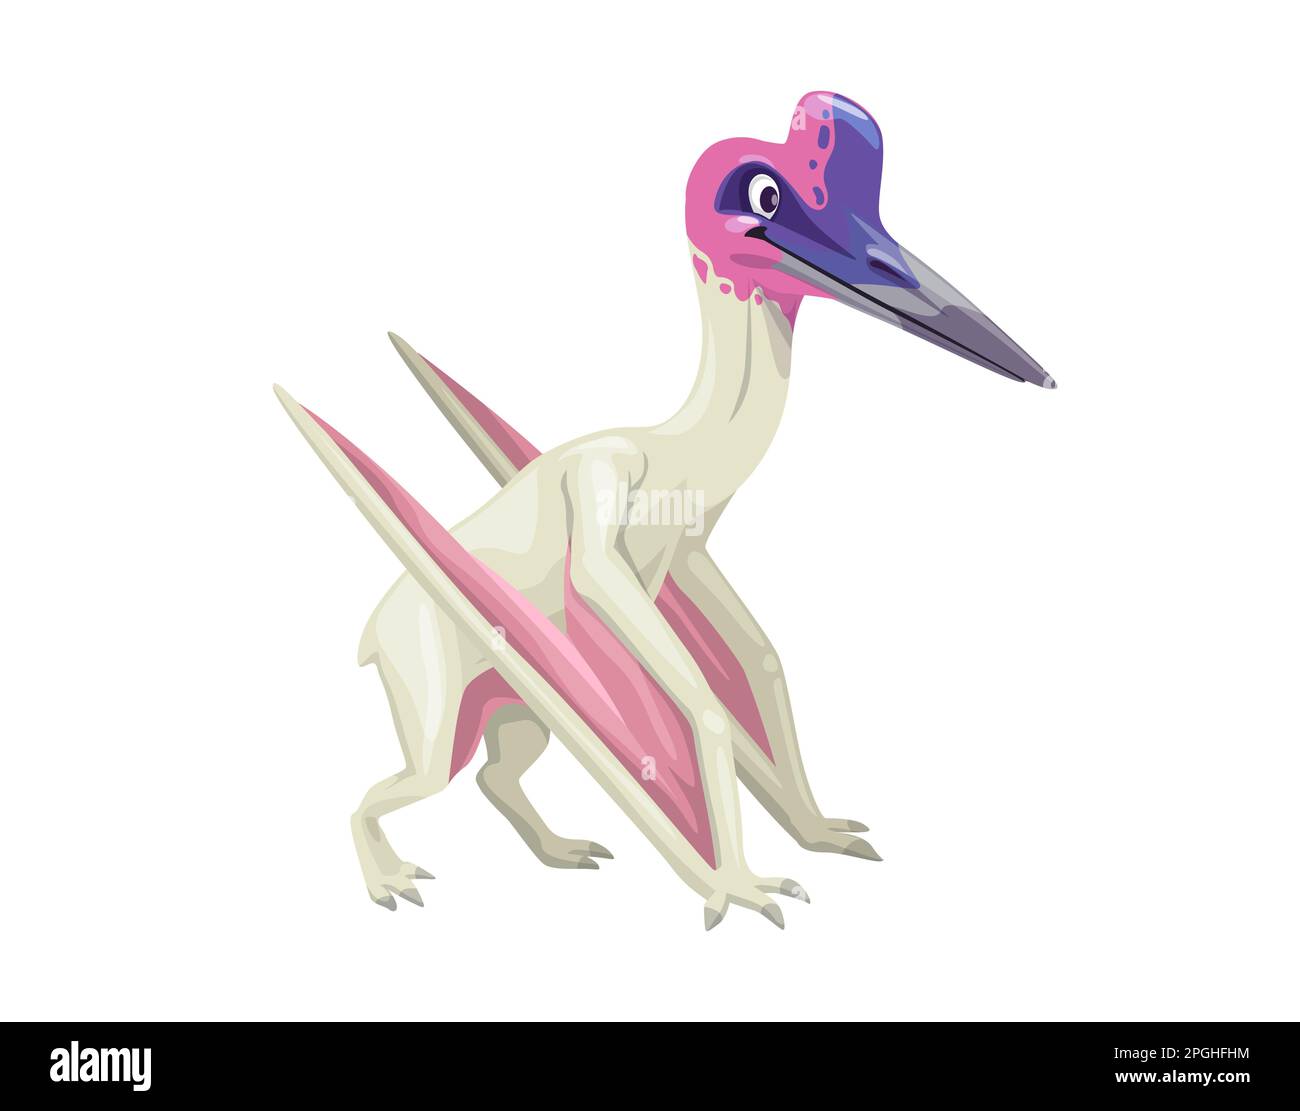 Fumetto quetzalcoatlus dinosauro carattere. Genere vettoriale isolato di pterosauro dentifricio della famiglia degli Azhdarchidae. Epoca preistorica cretacea alata fl Illustrazione Vettoriale